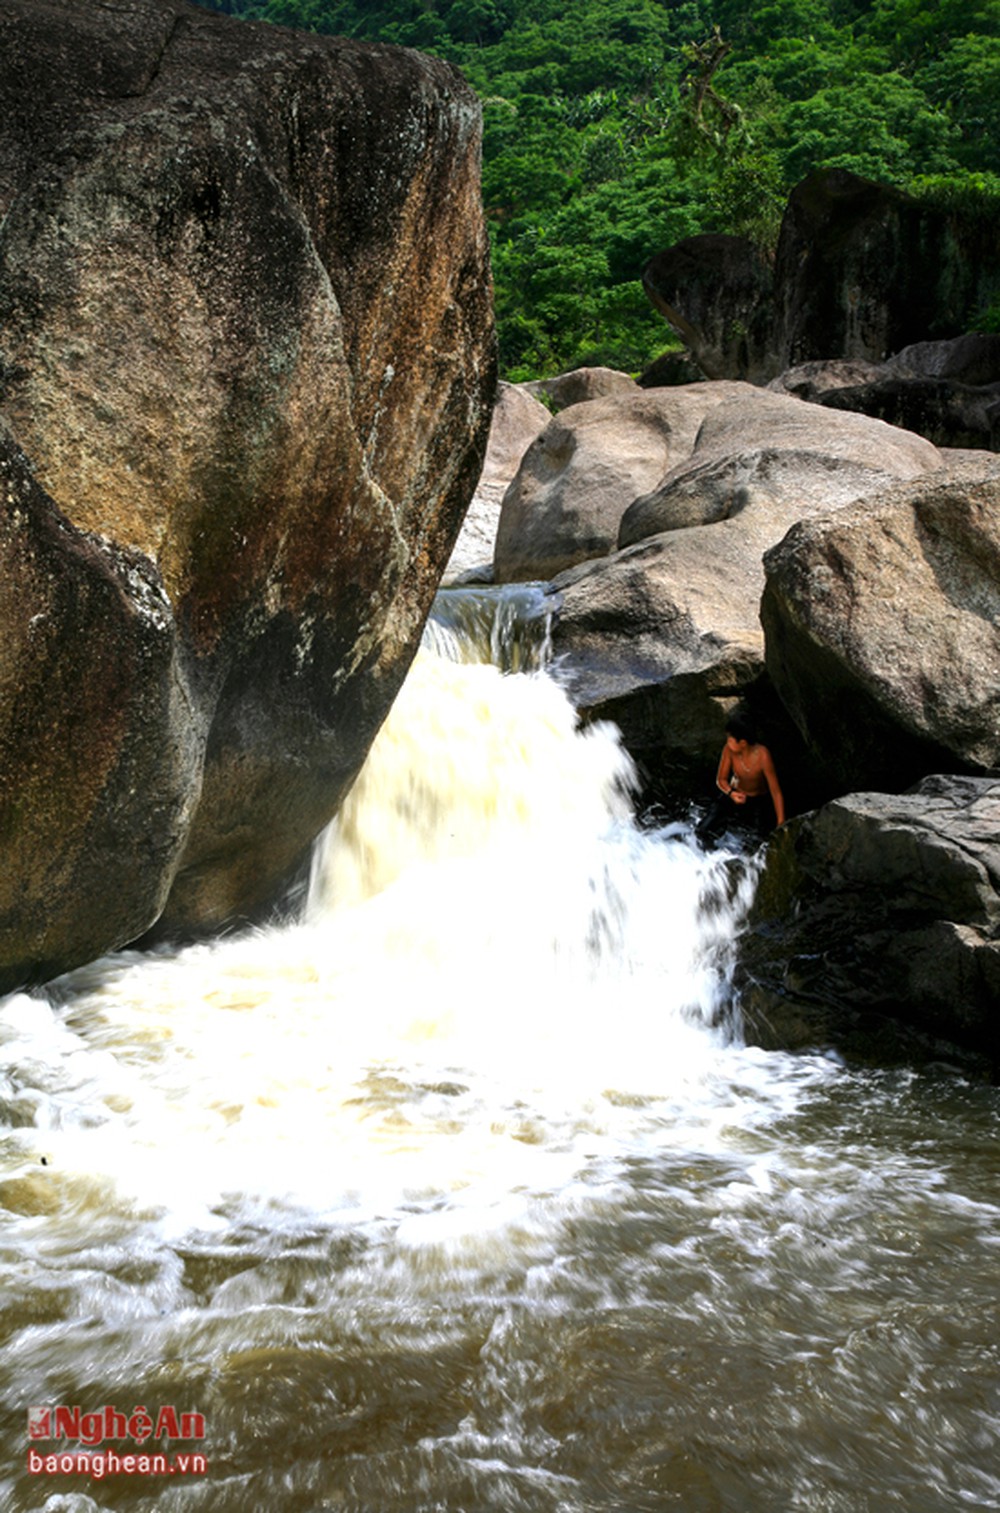 Bãi đá cuội khổng lồ hình thù kỳ dị bên dòng suối tiên nước mát lạnh ở miền Tây Nghệ An - Ảnh 10.